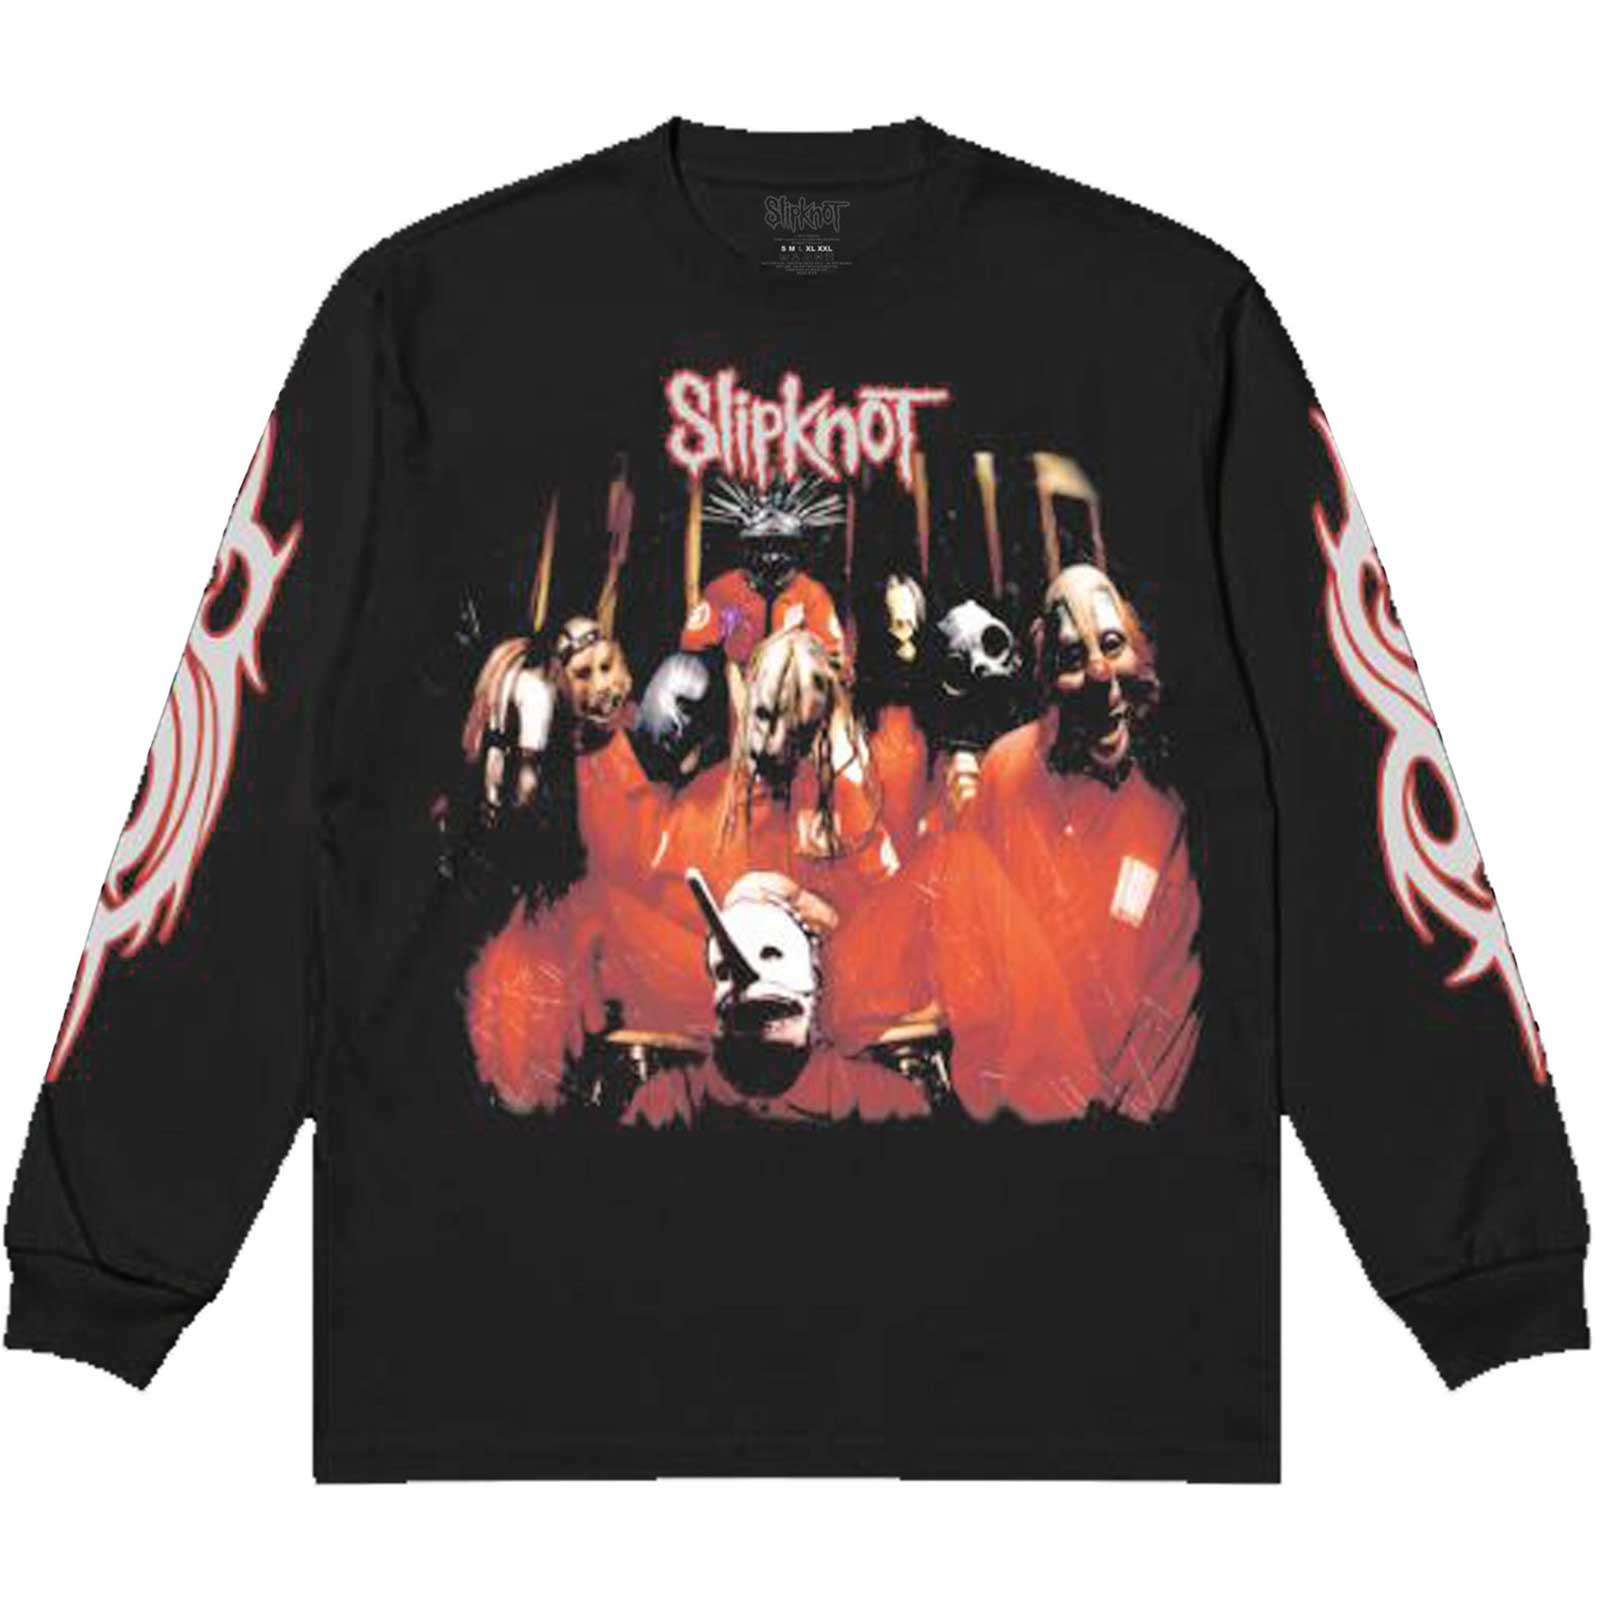 Slipknot - 1st Album Black Long Sleeve Shirt